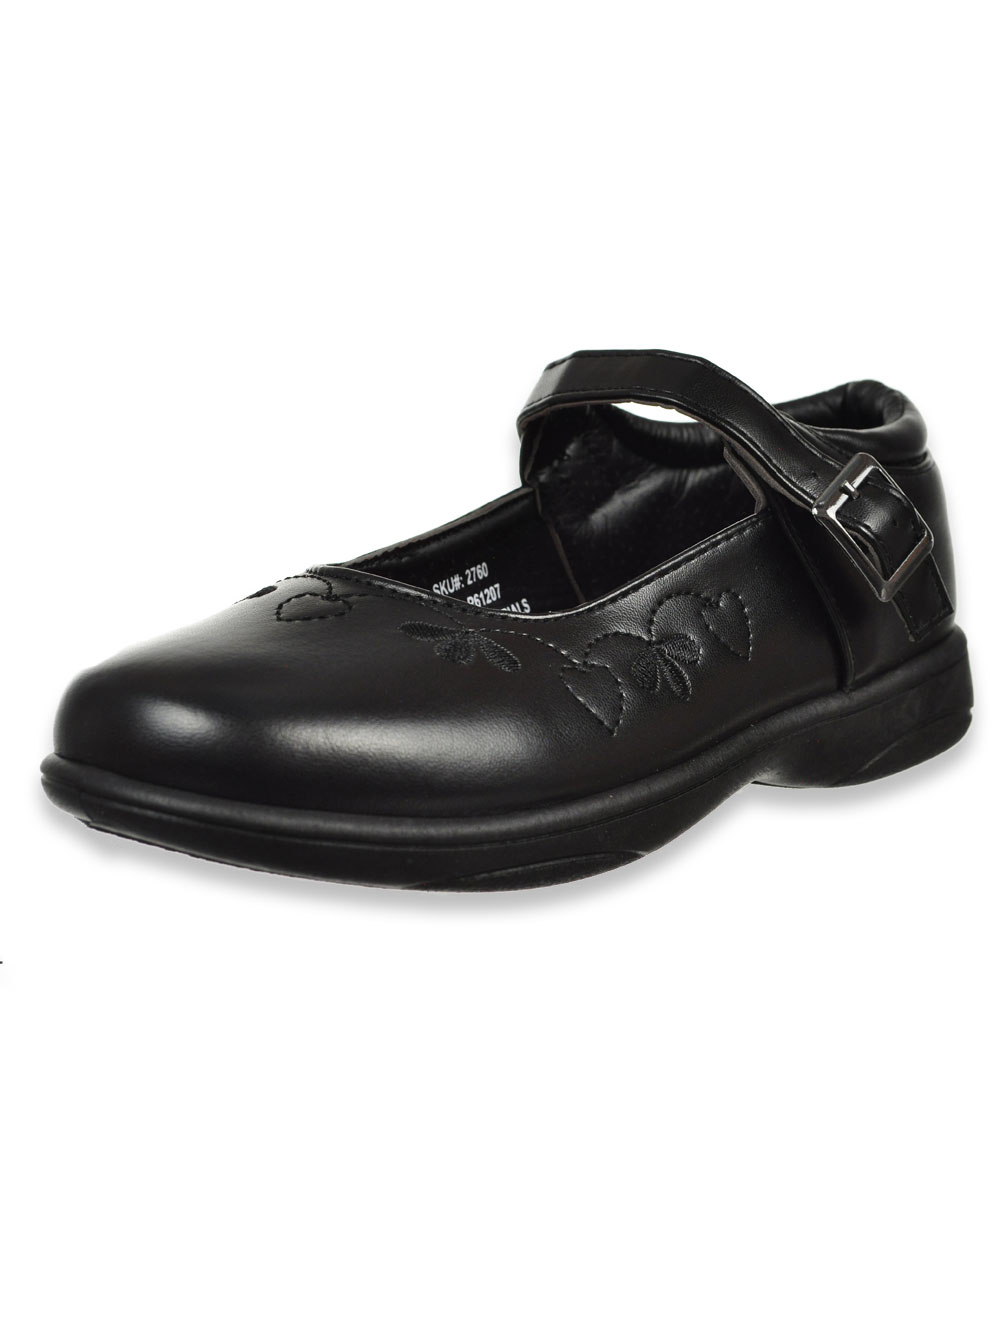 girls black mary jane shoes